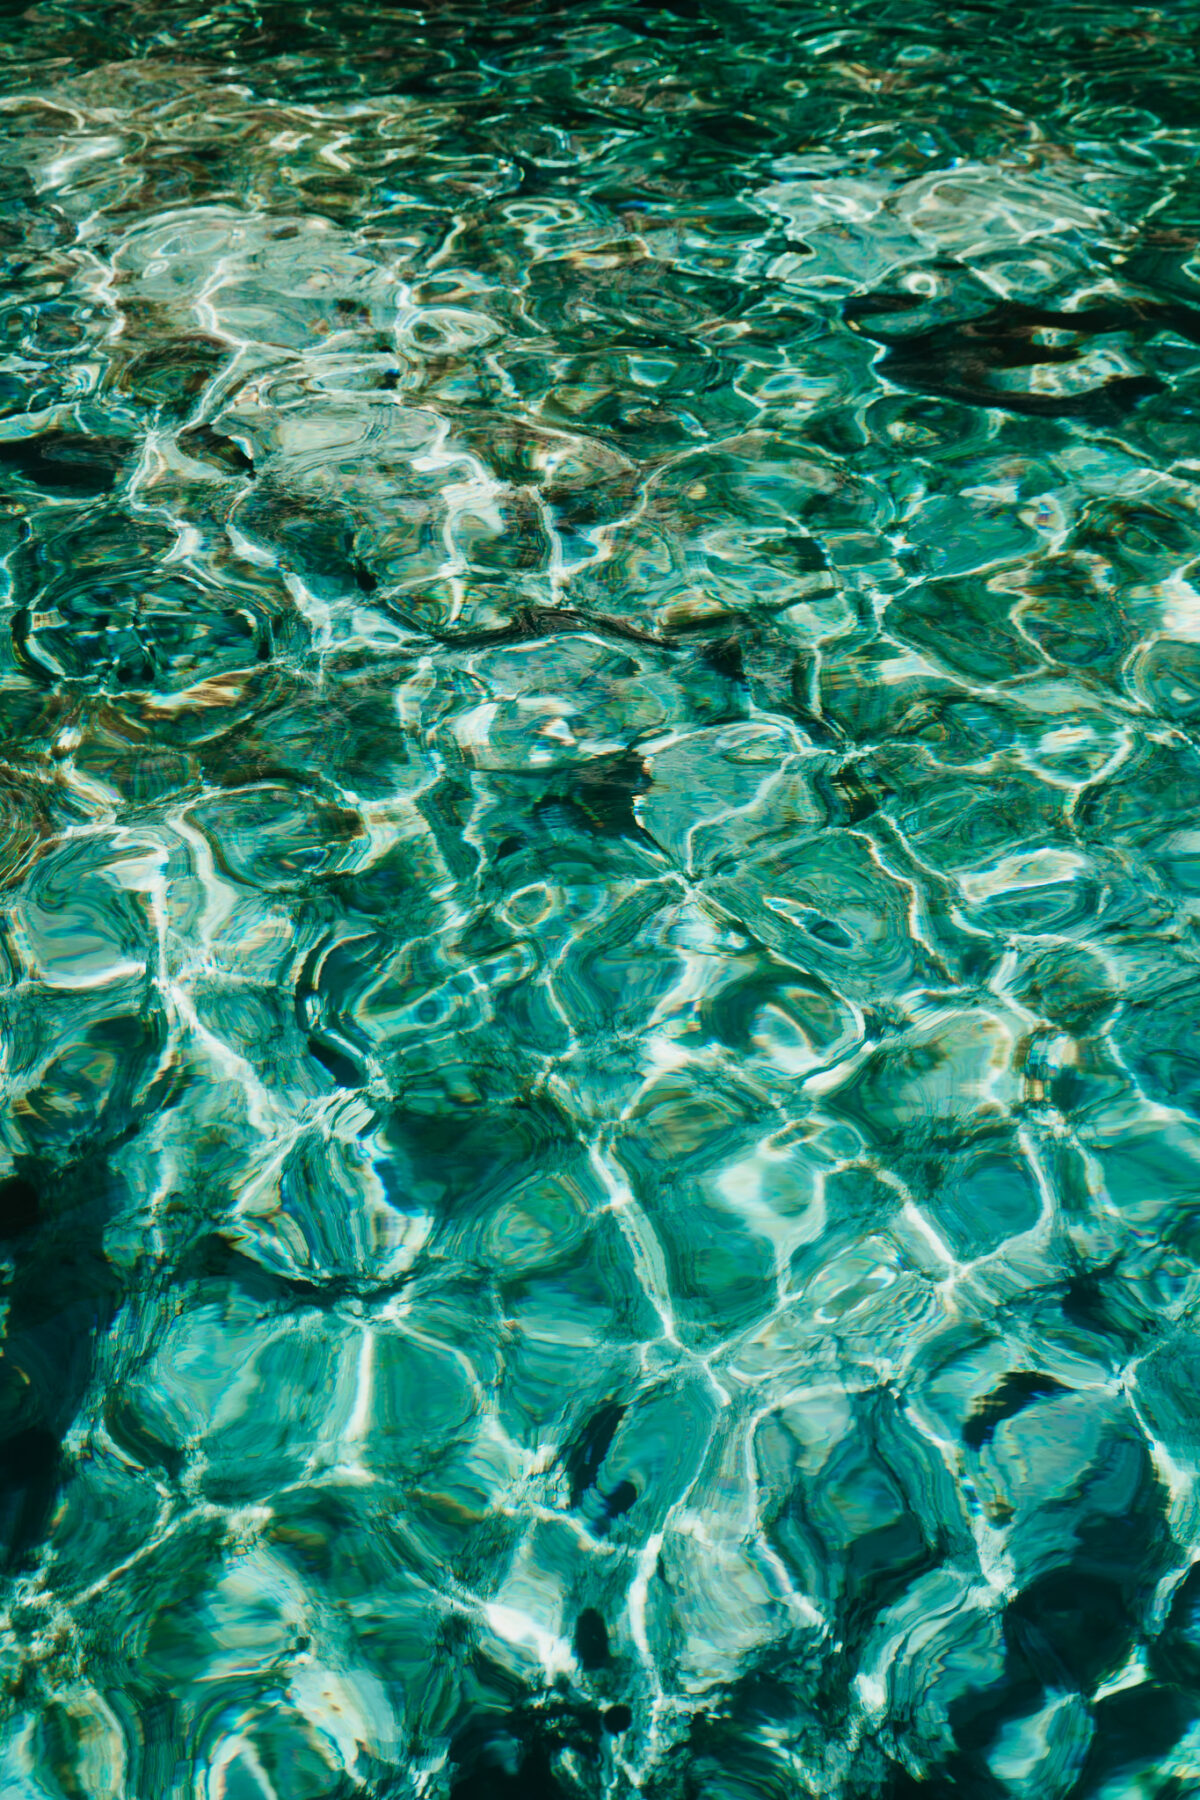 La couleur incroyable des eaux des îles Tremiti